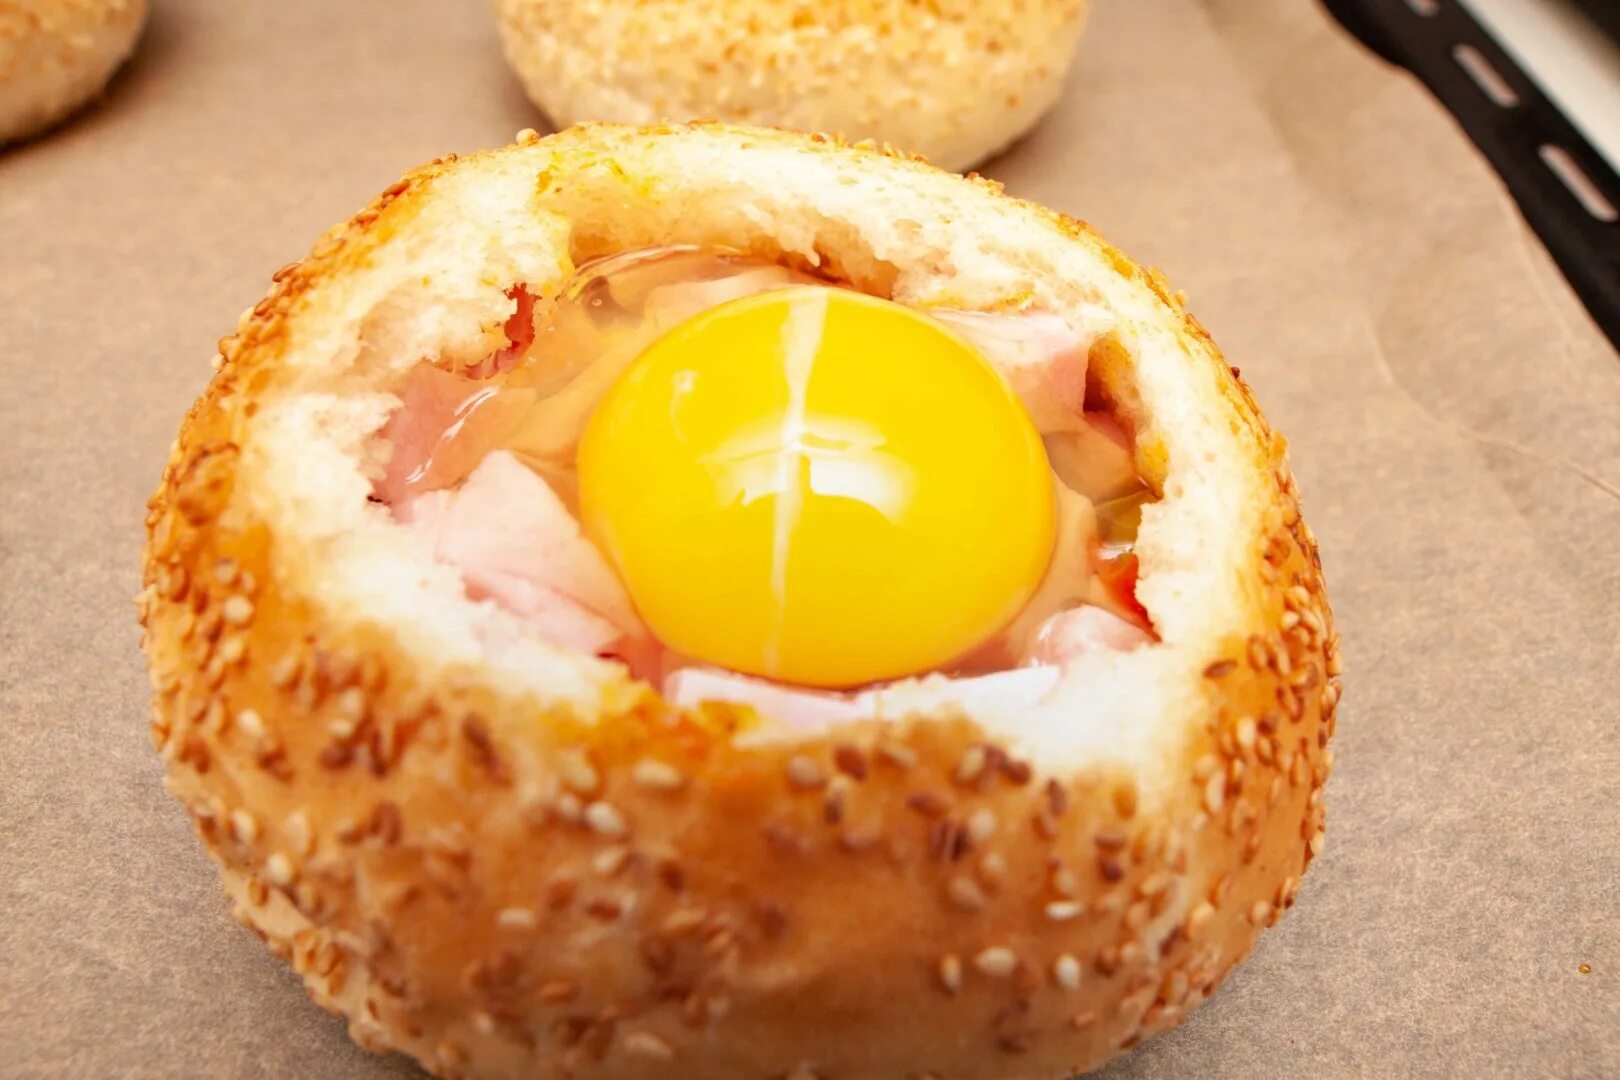 Запеченные яйца. Булочка с яйцом. Яичница в булочке. Яйцо в булочке в духовке. Завтрак в булочке с яйцом.